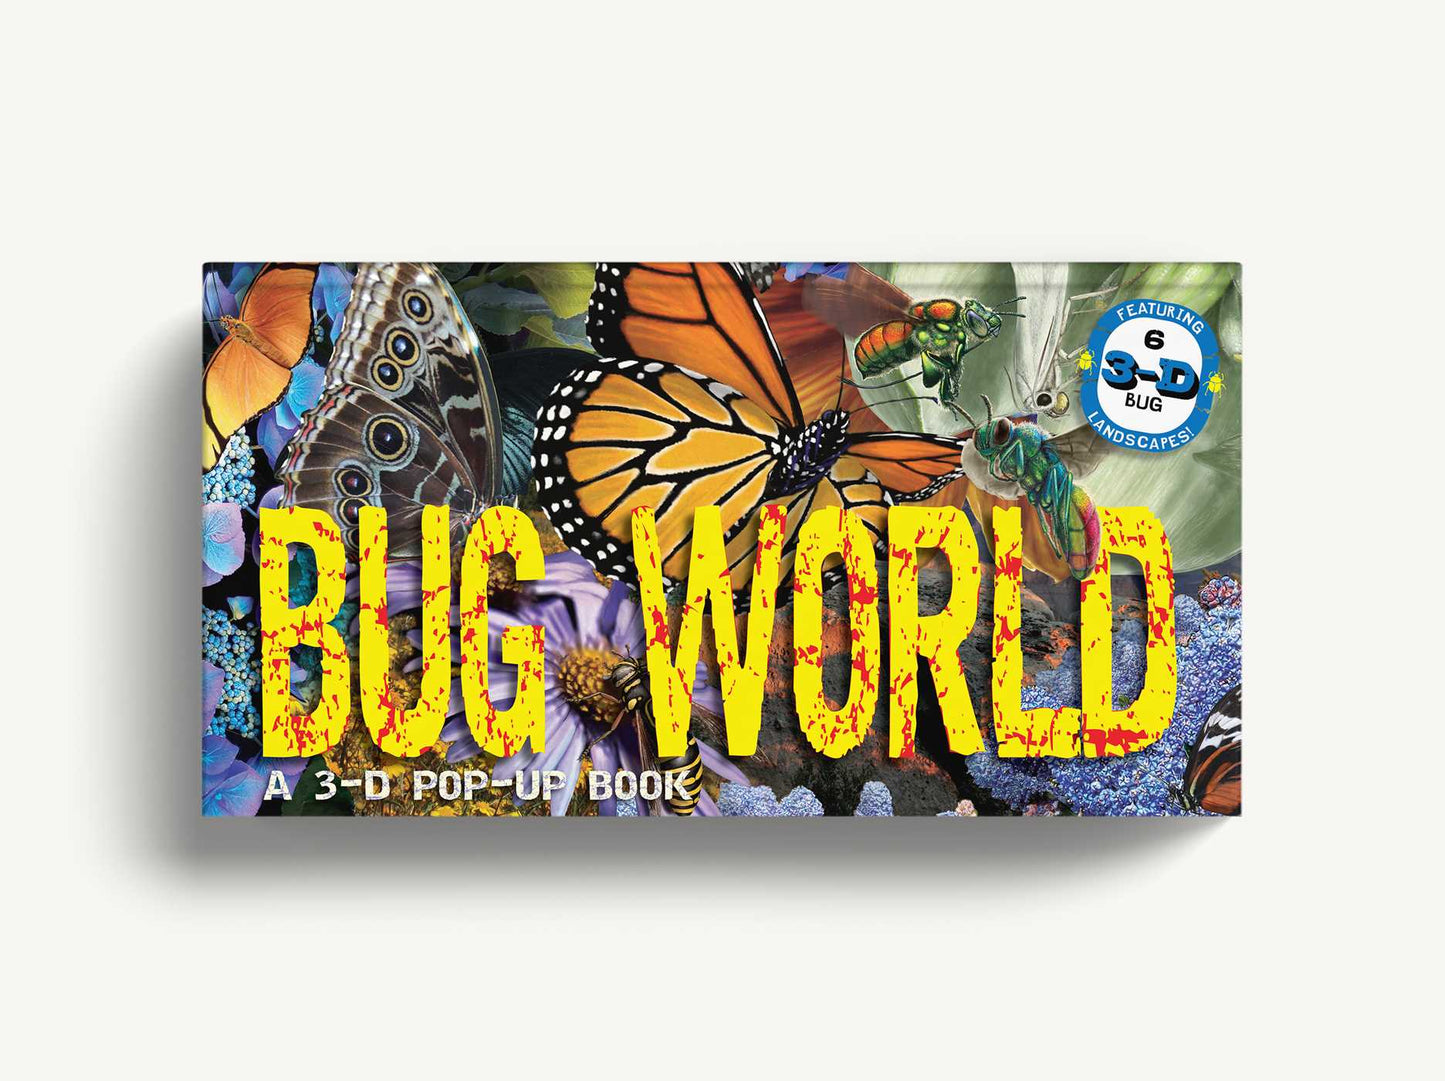 Bug World: A 3-D Pop-Up Book